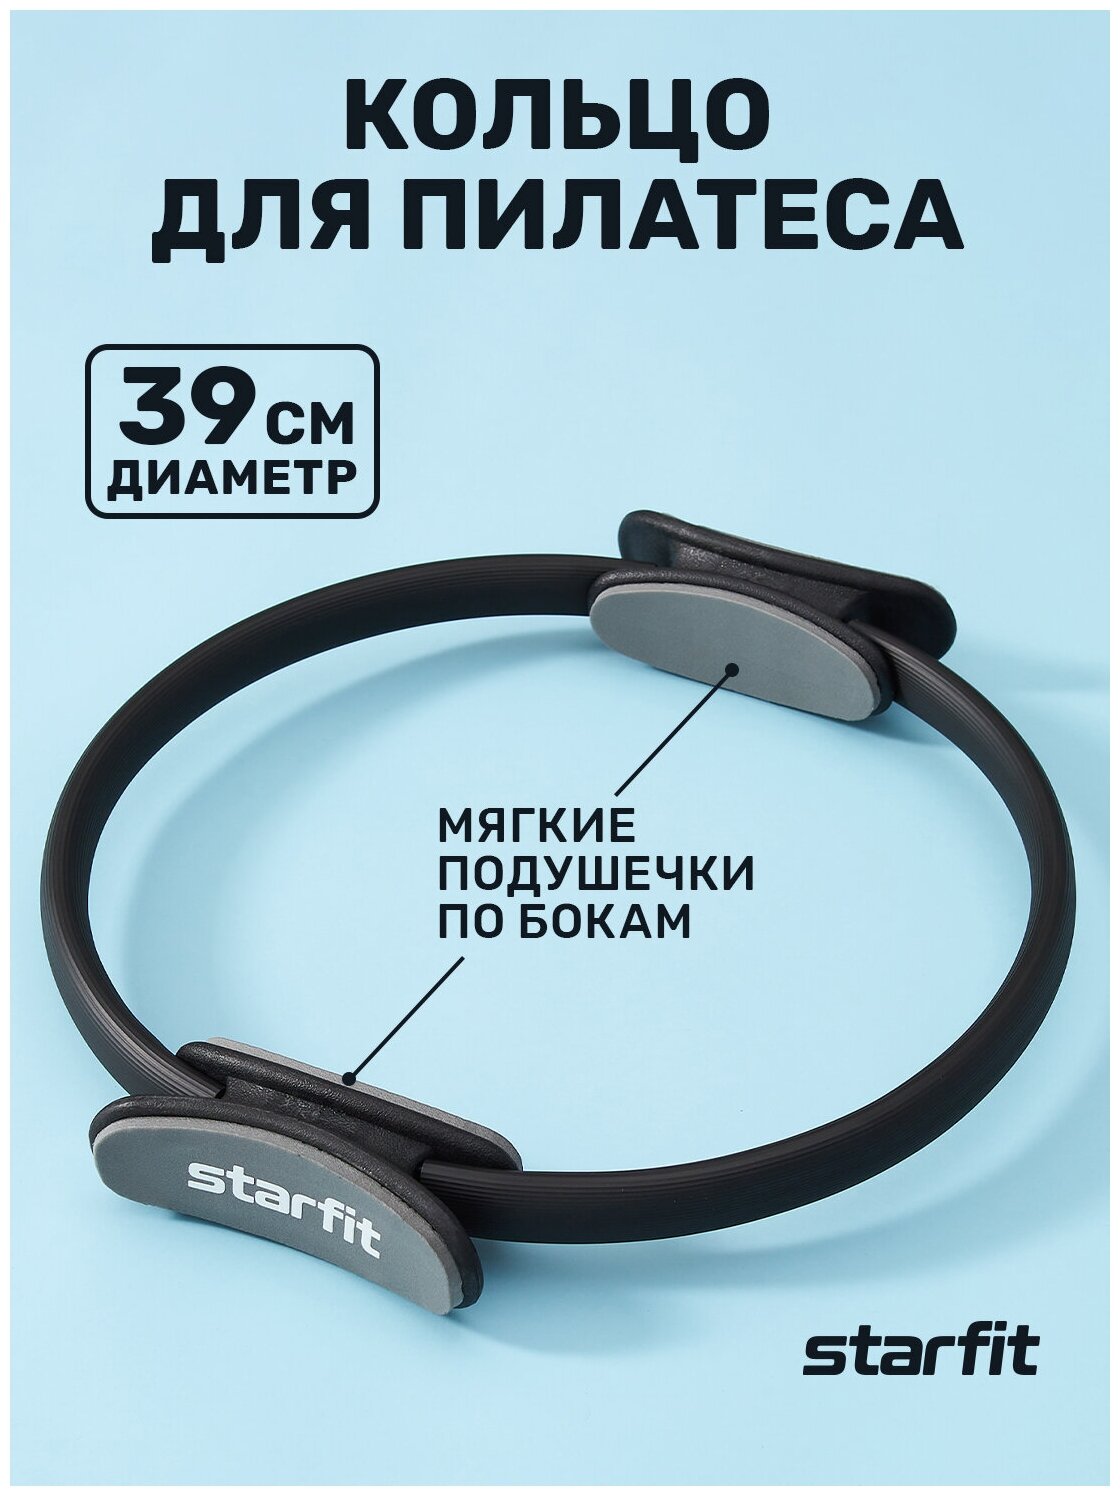 Кольцо для пилатеса STARFIT FA-402 39 см, черный